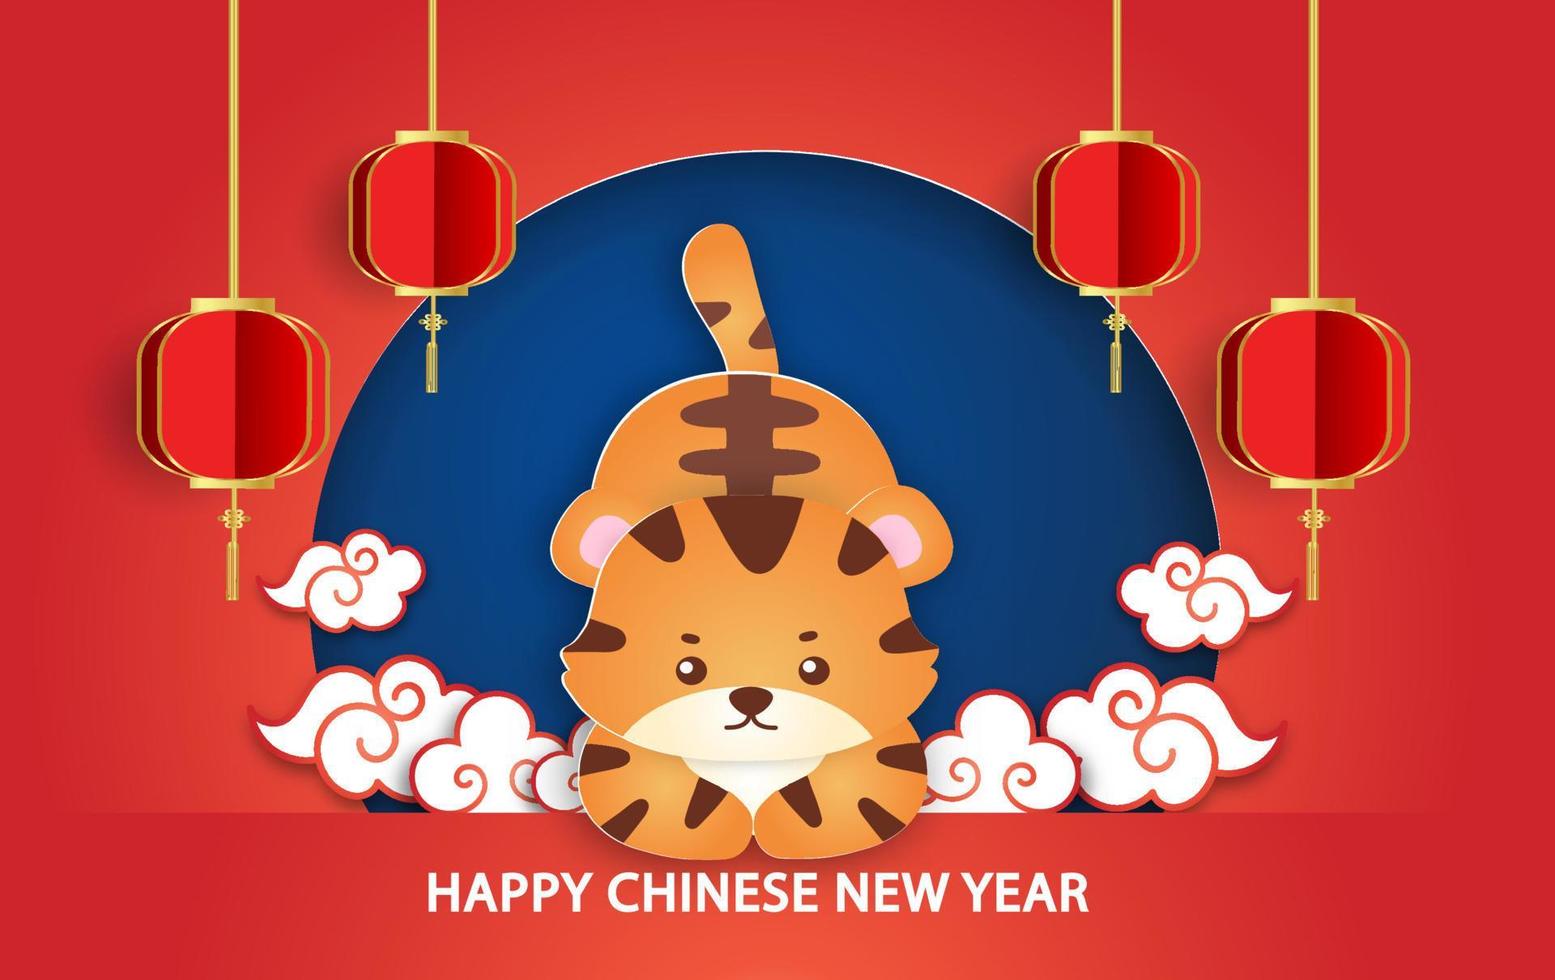 Chinesisches Neujahr 2022 Jahr des Tigers Grußkarte im Scherenschnitt-Stil vektor